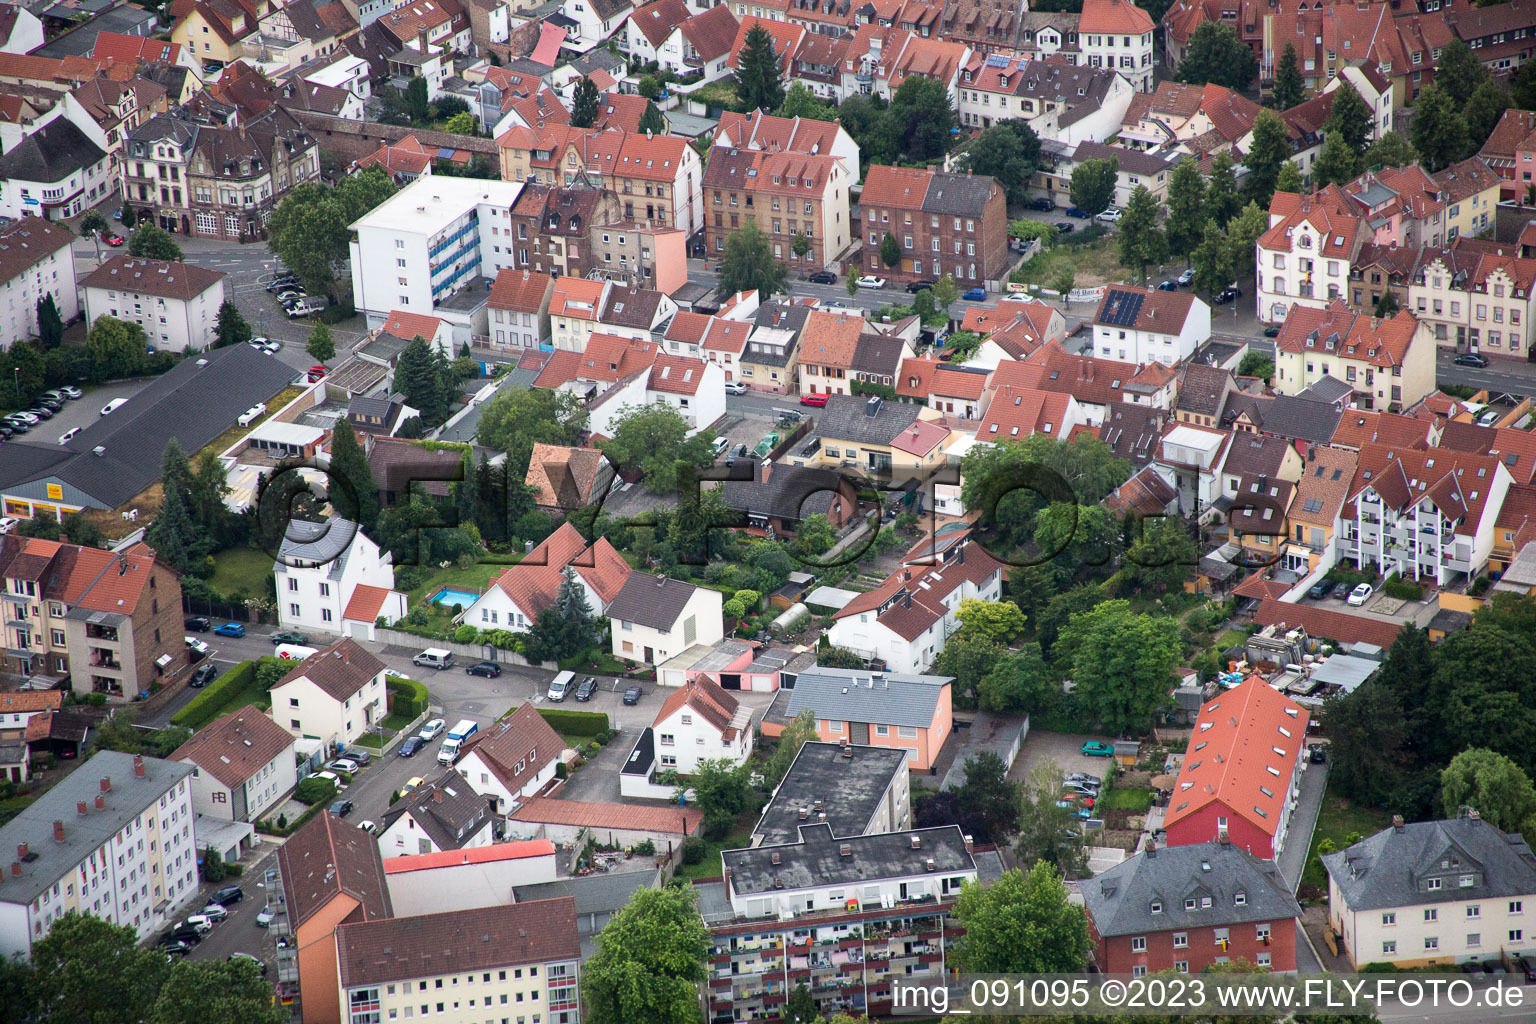 Worms im Bundesland Rheinland-Pfalz, Deutschland von der Drohne aus gesehen